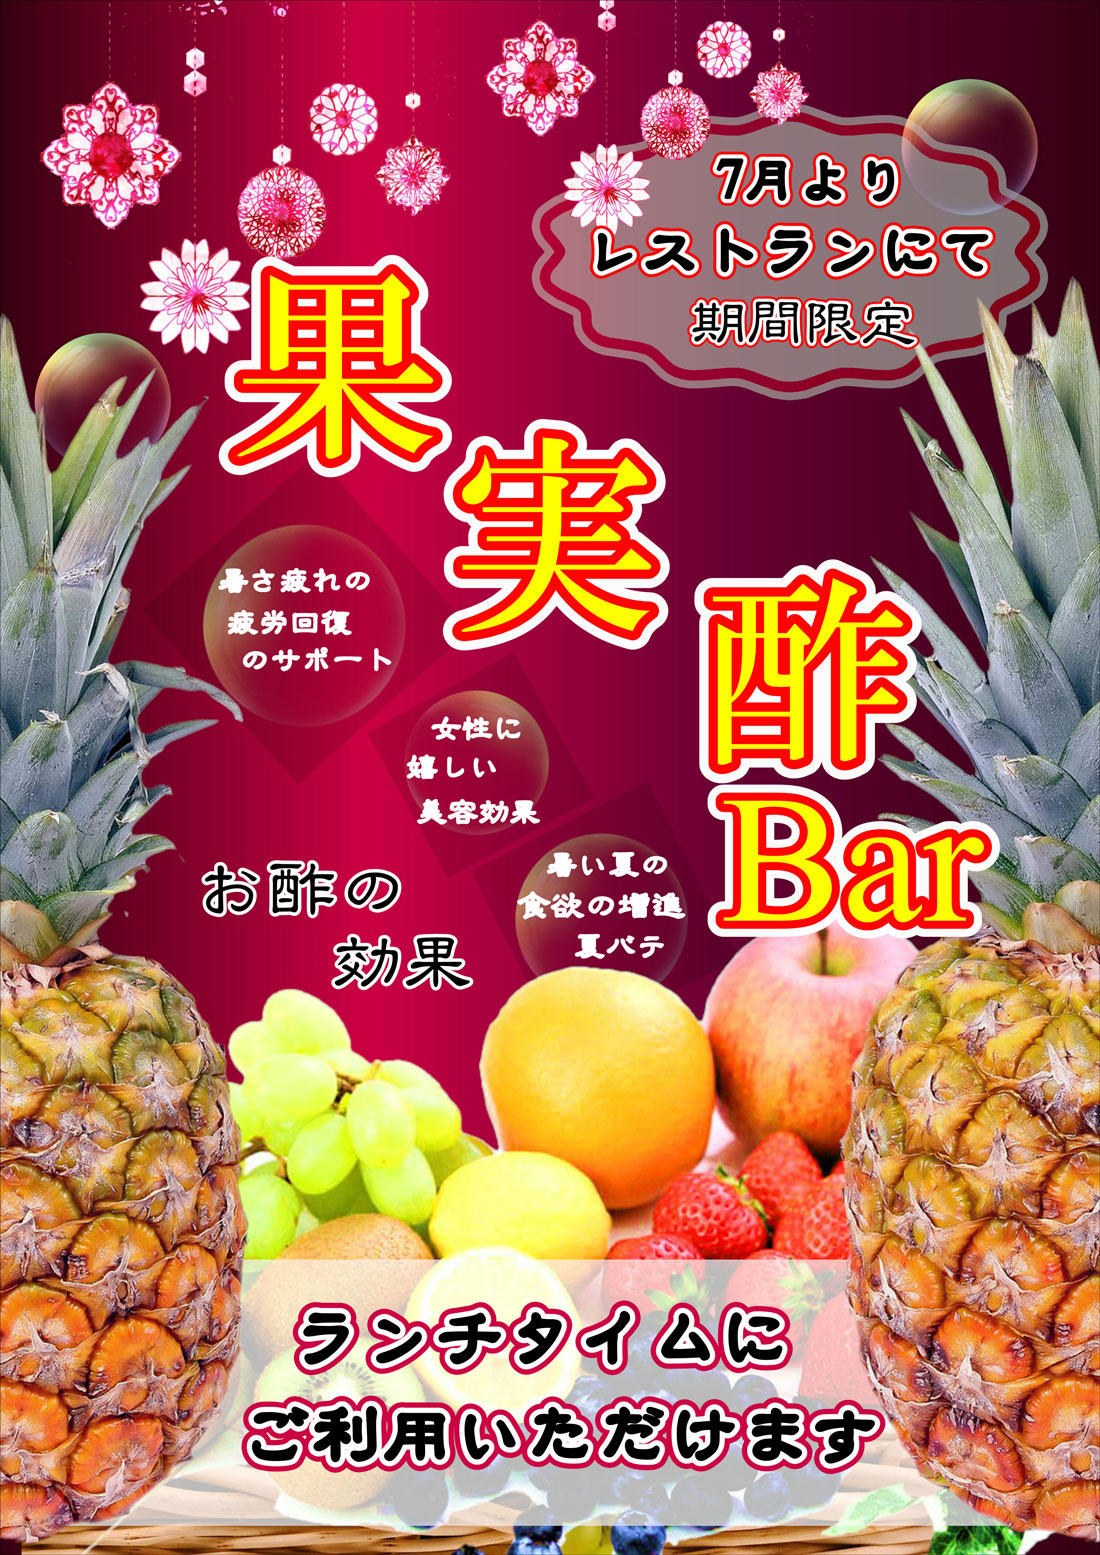 果実酢bar